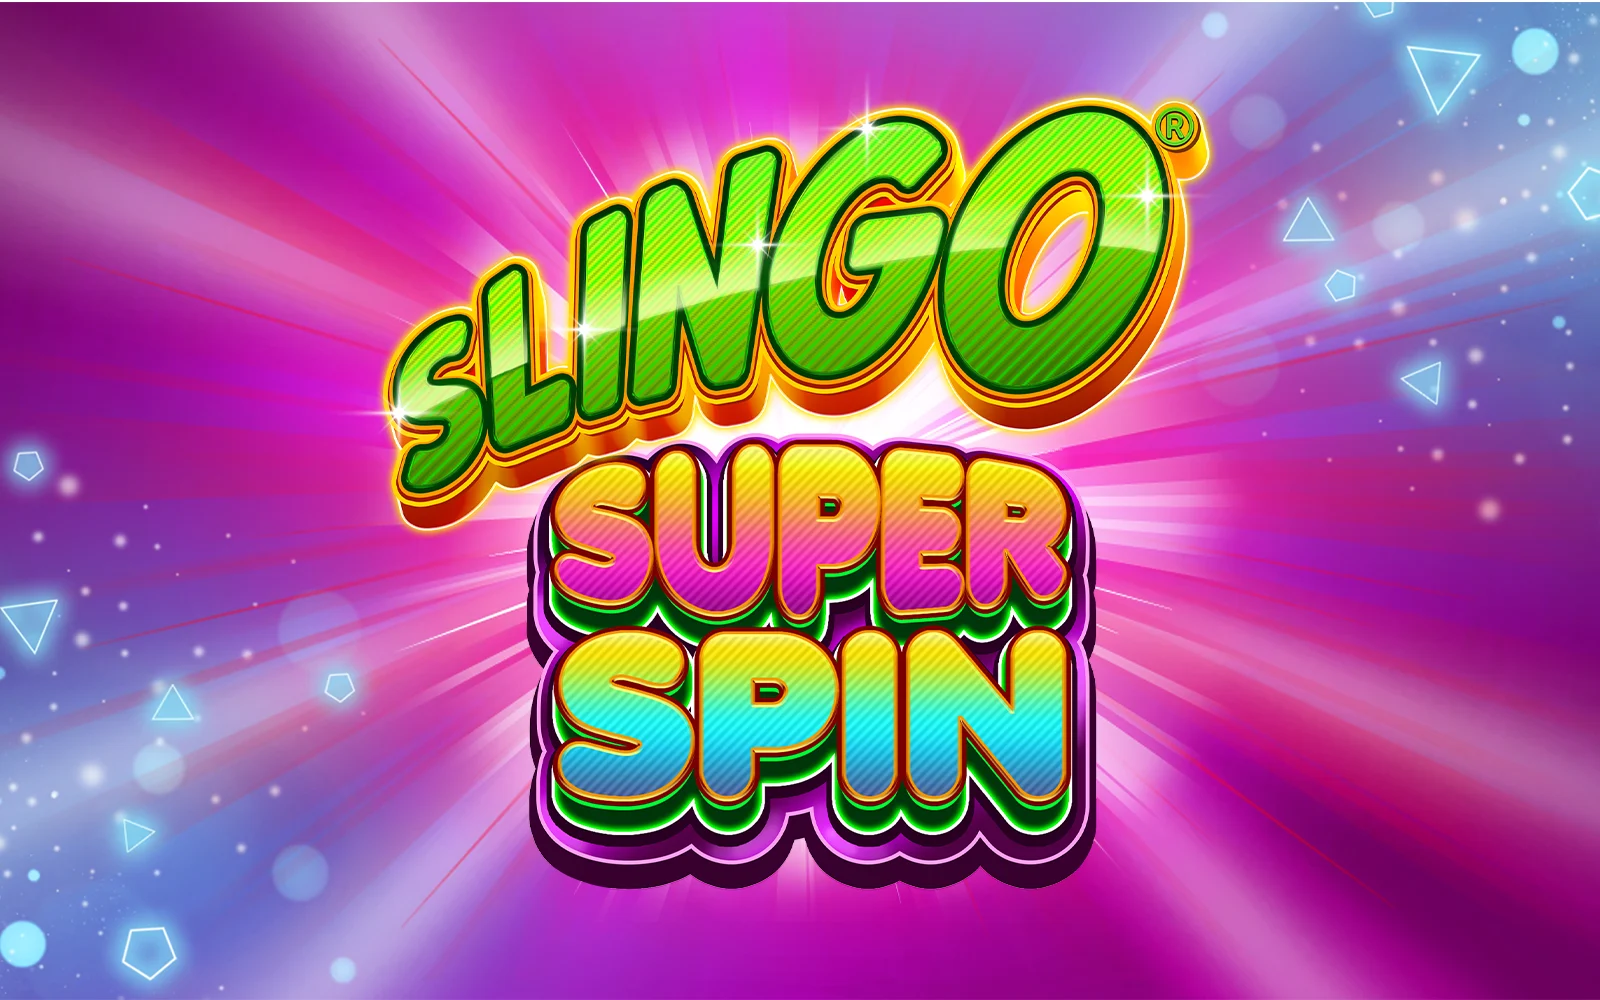 Παίξτε Slingo Super Spin στο online καζίνο Starcasino.be